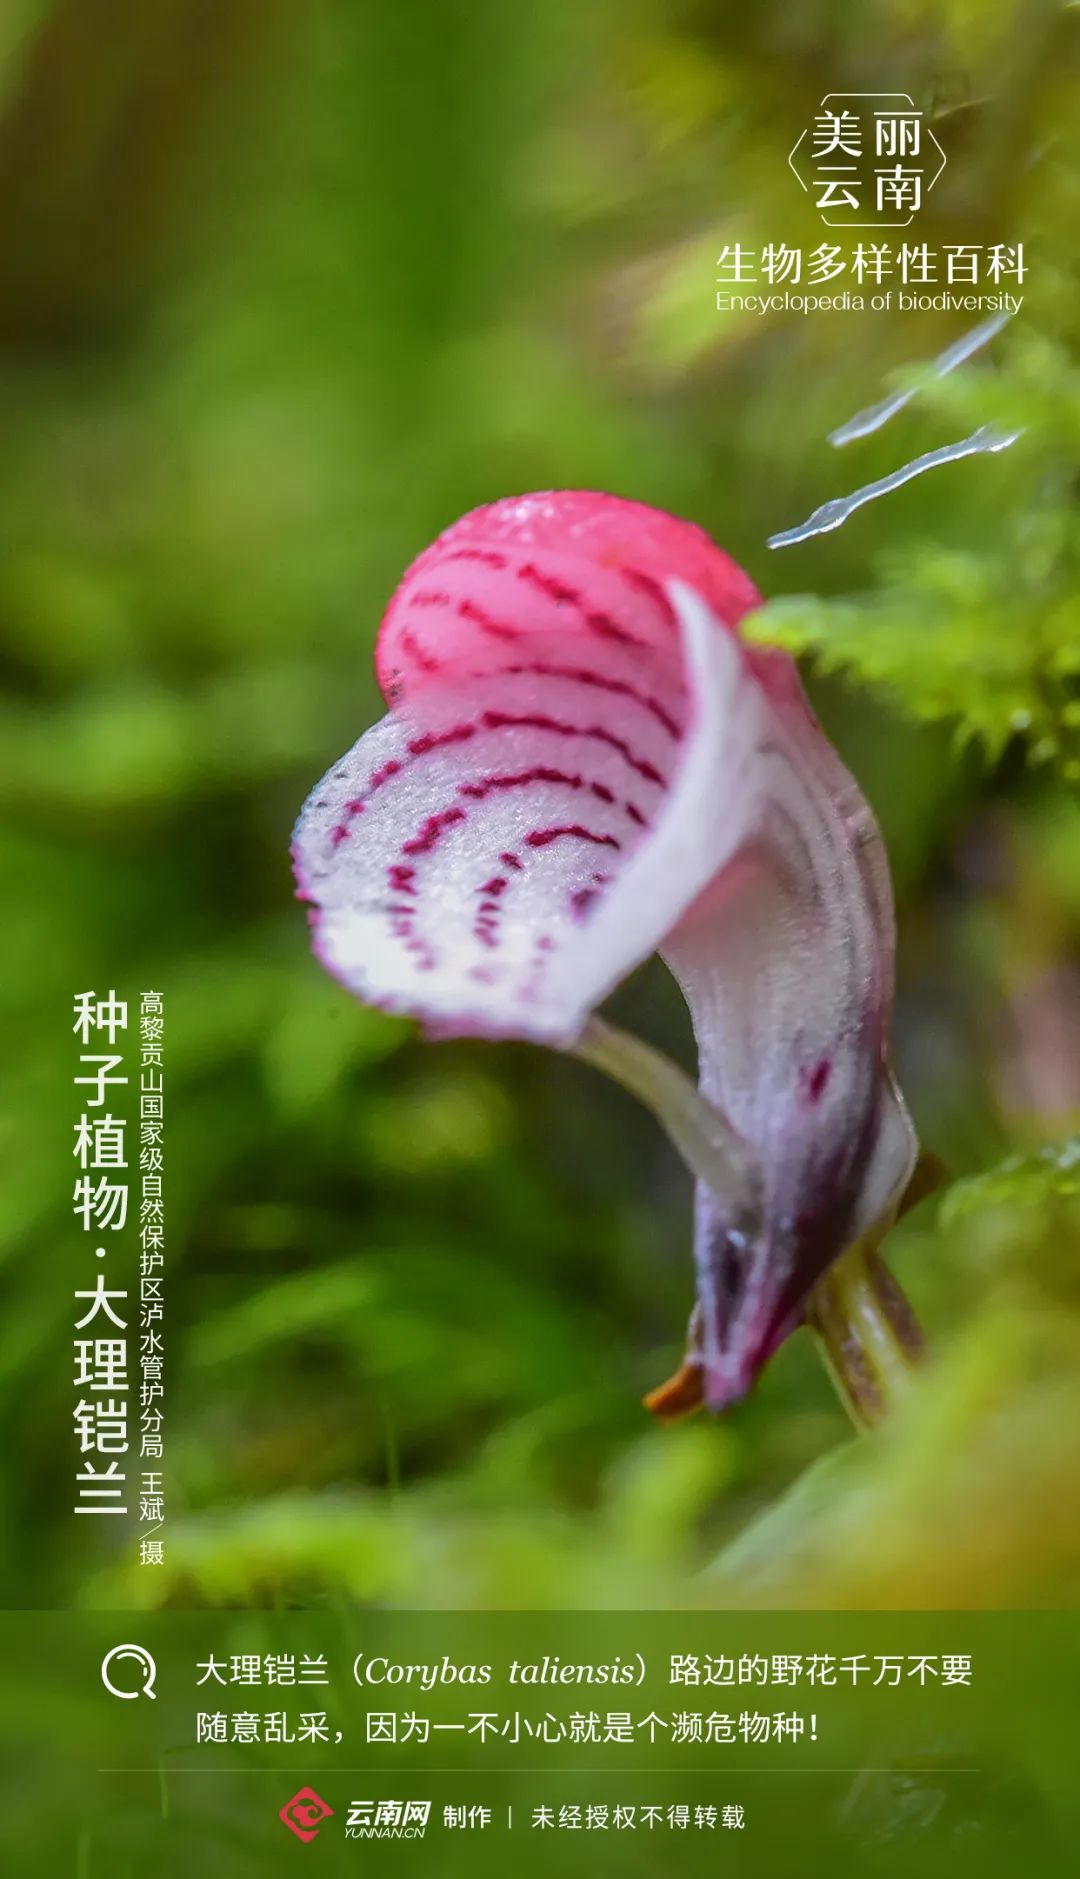 【生物多样性百科】种子植物·大理铠兰:我这朵野花你可不要采!